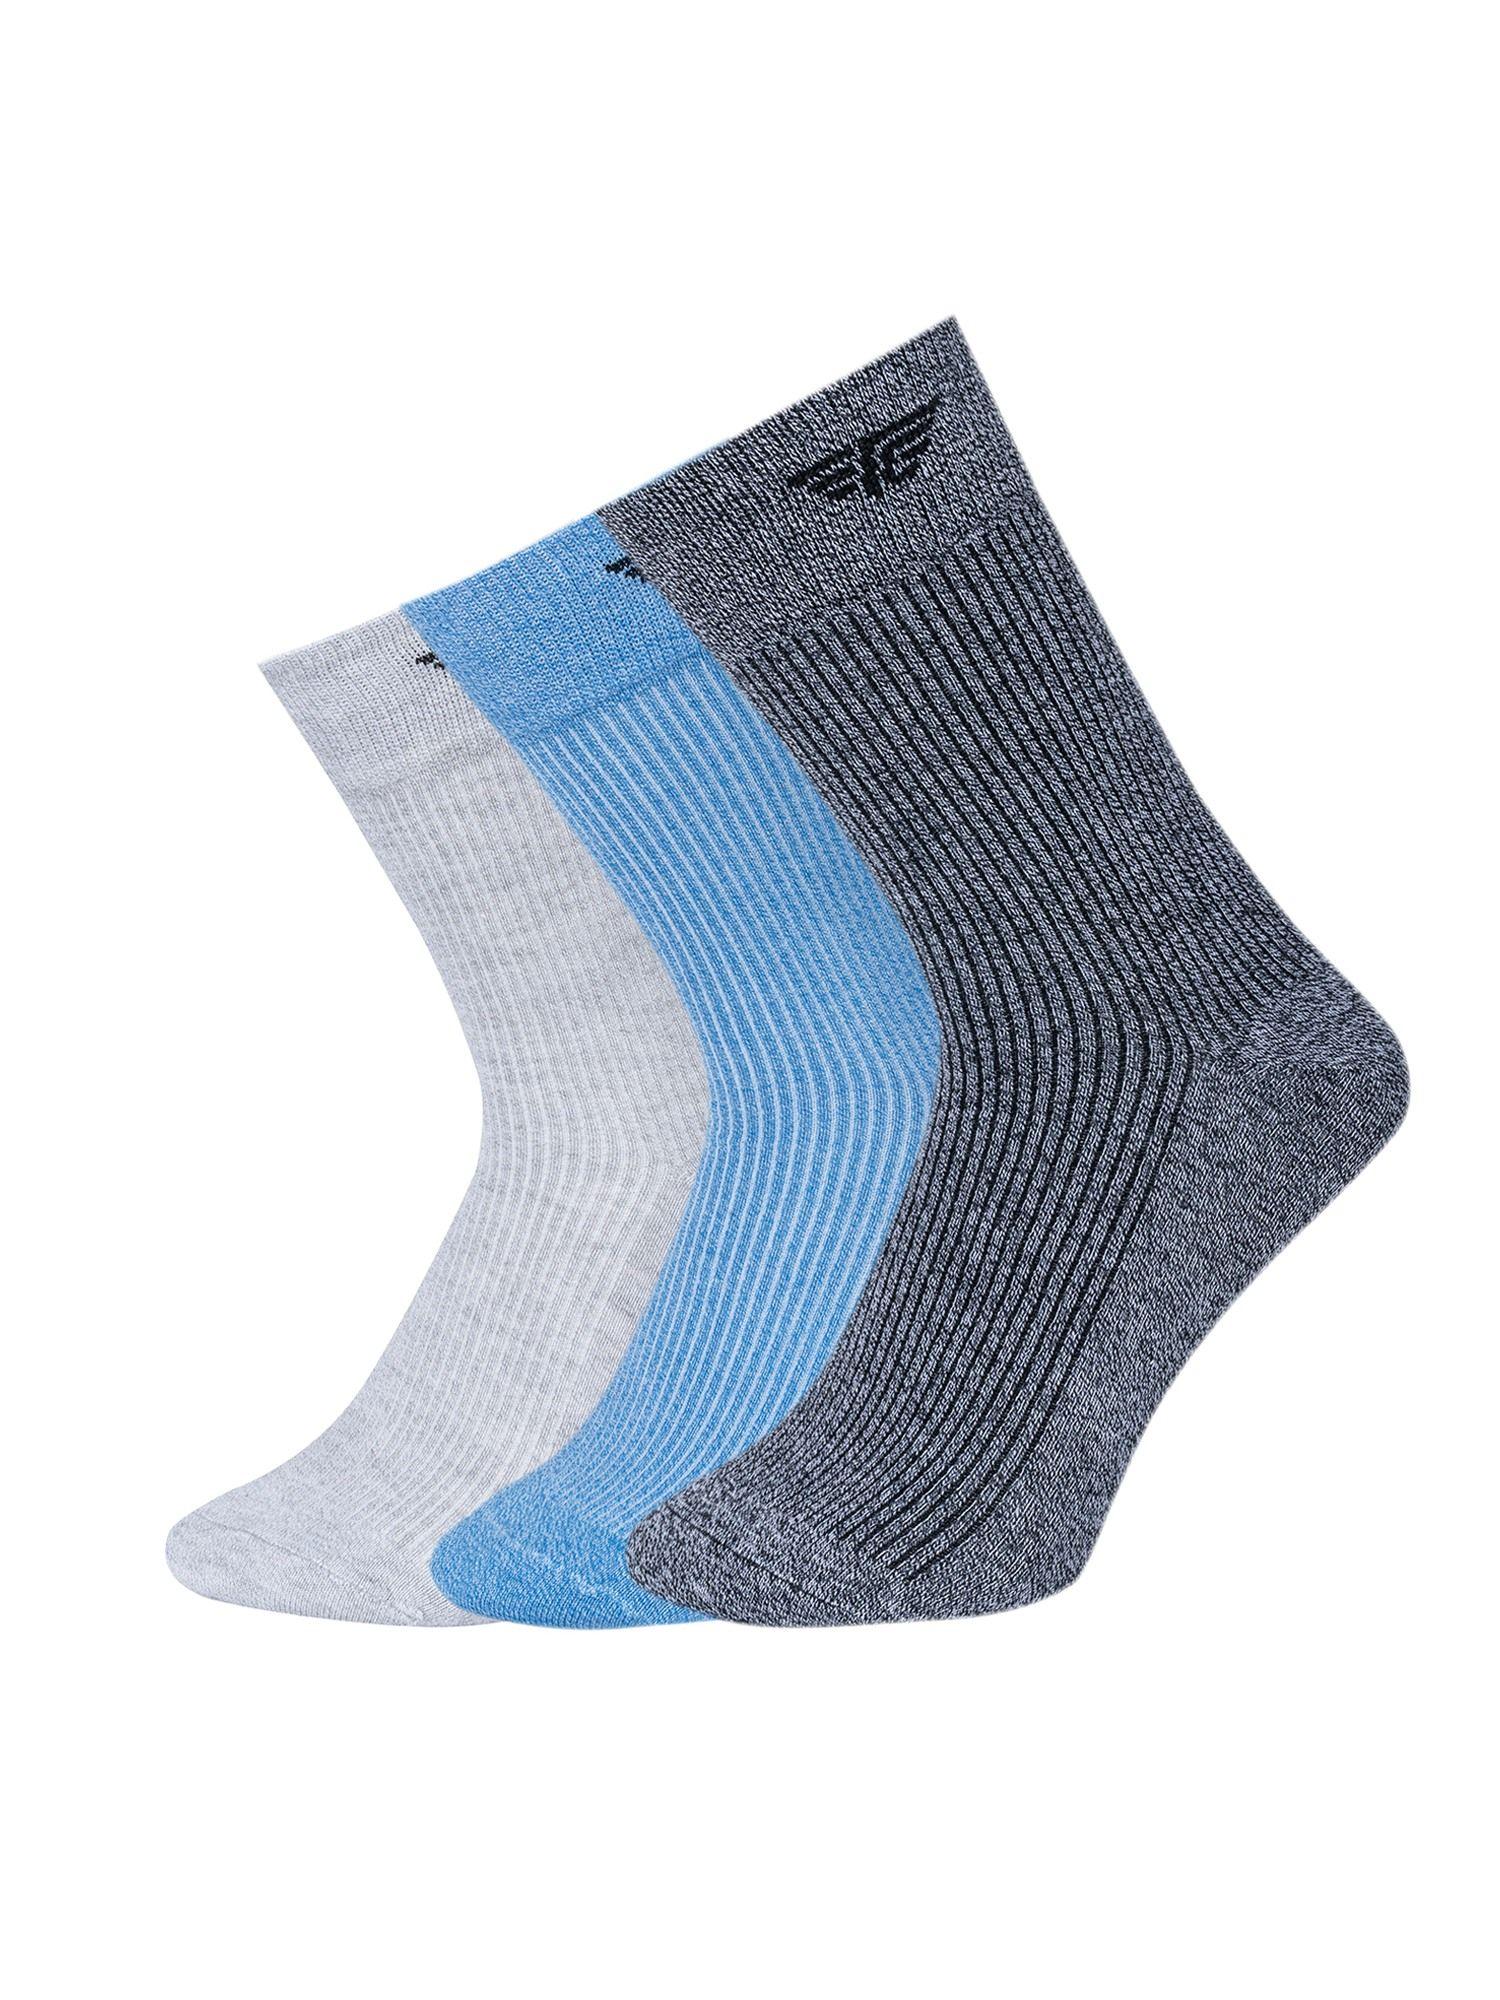 men-multi-color-melange-above-ankle-socks-(pack-of-3)